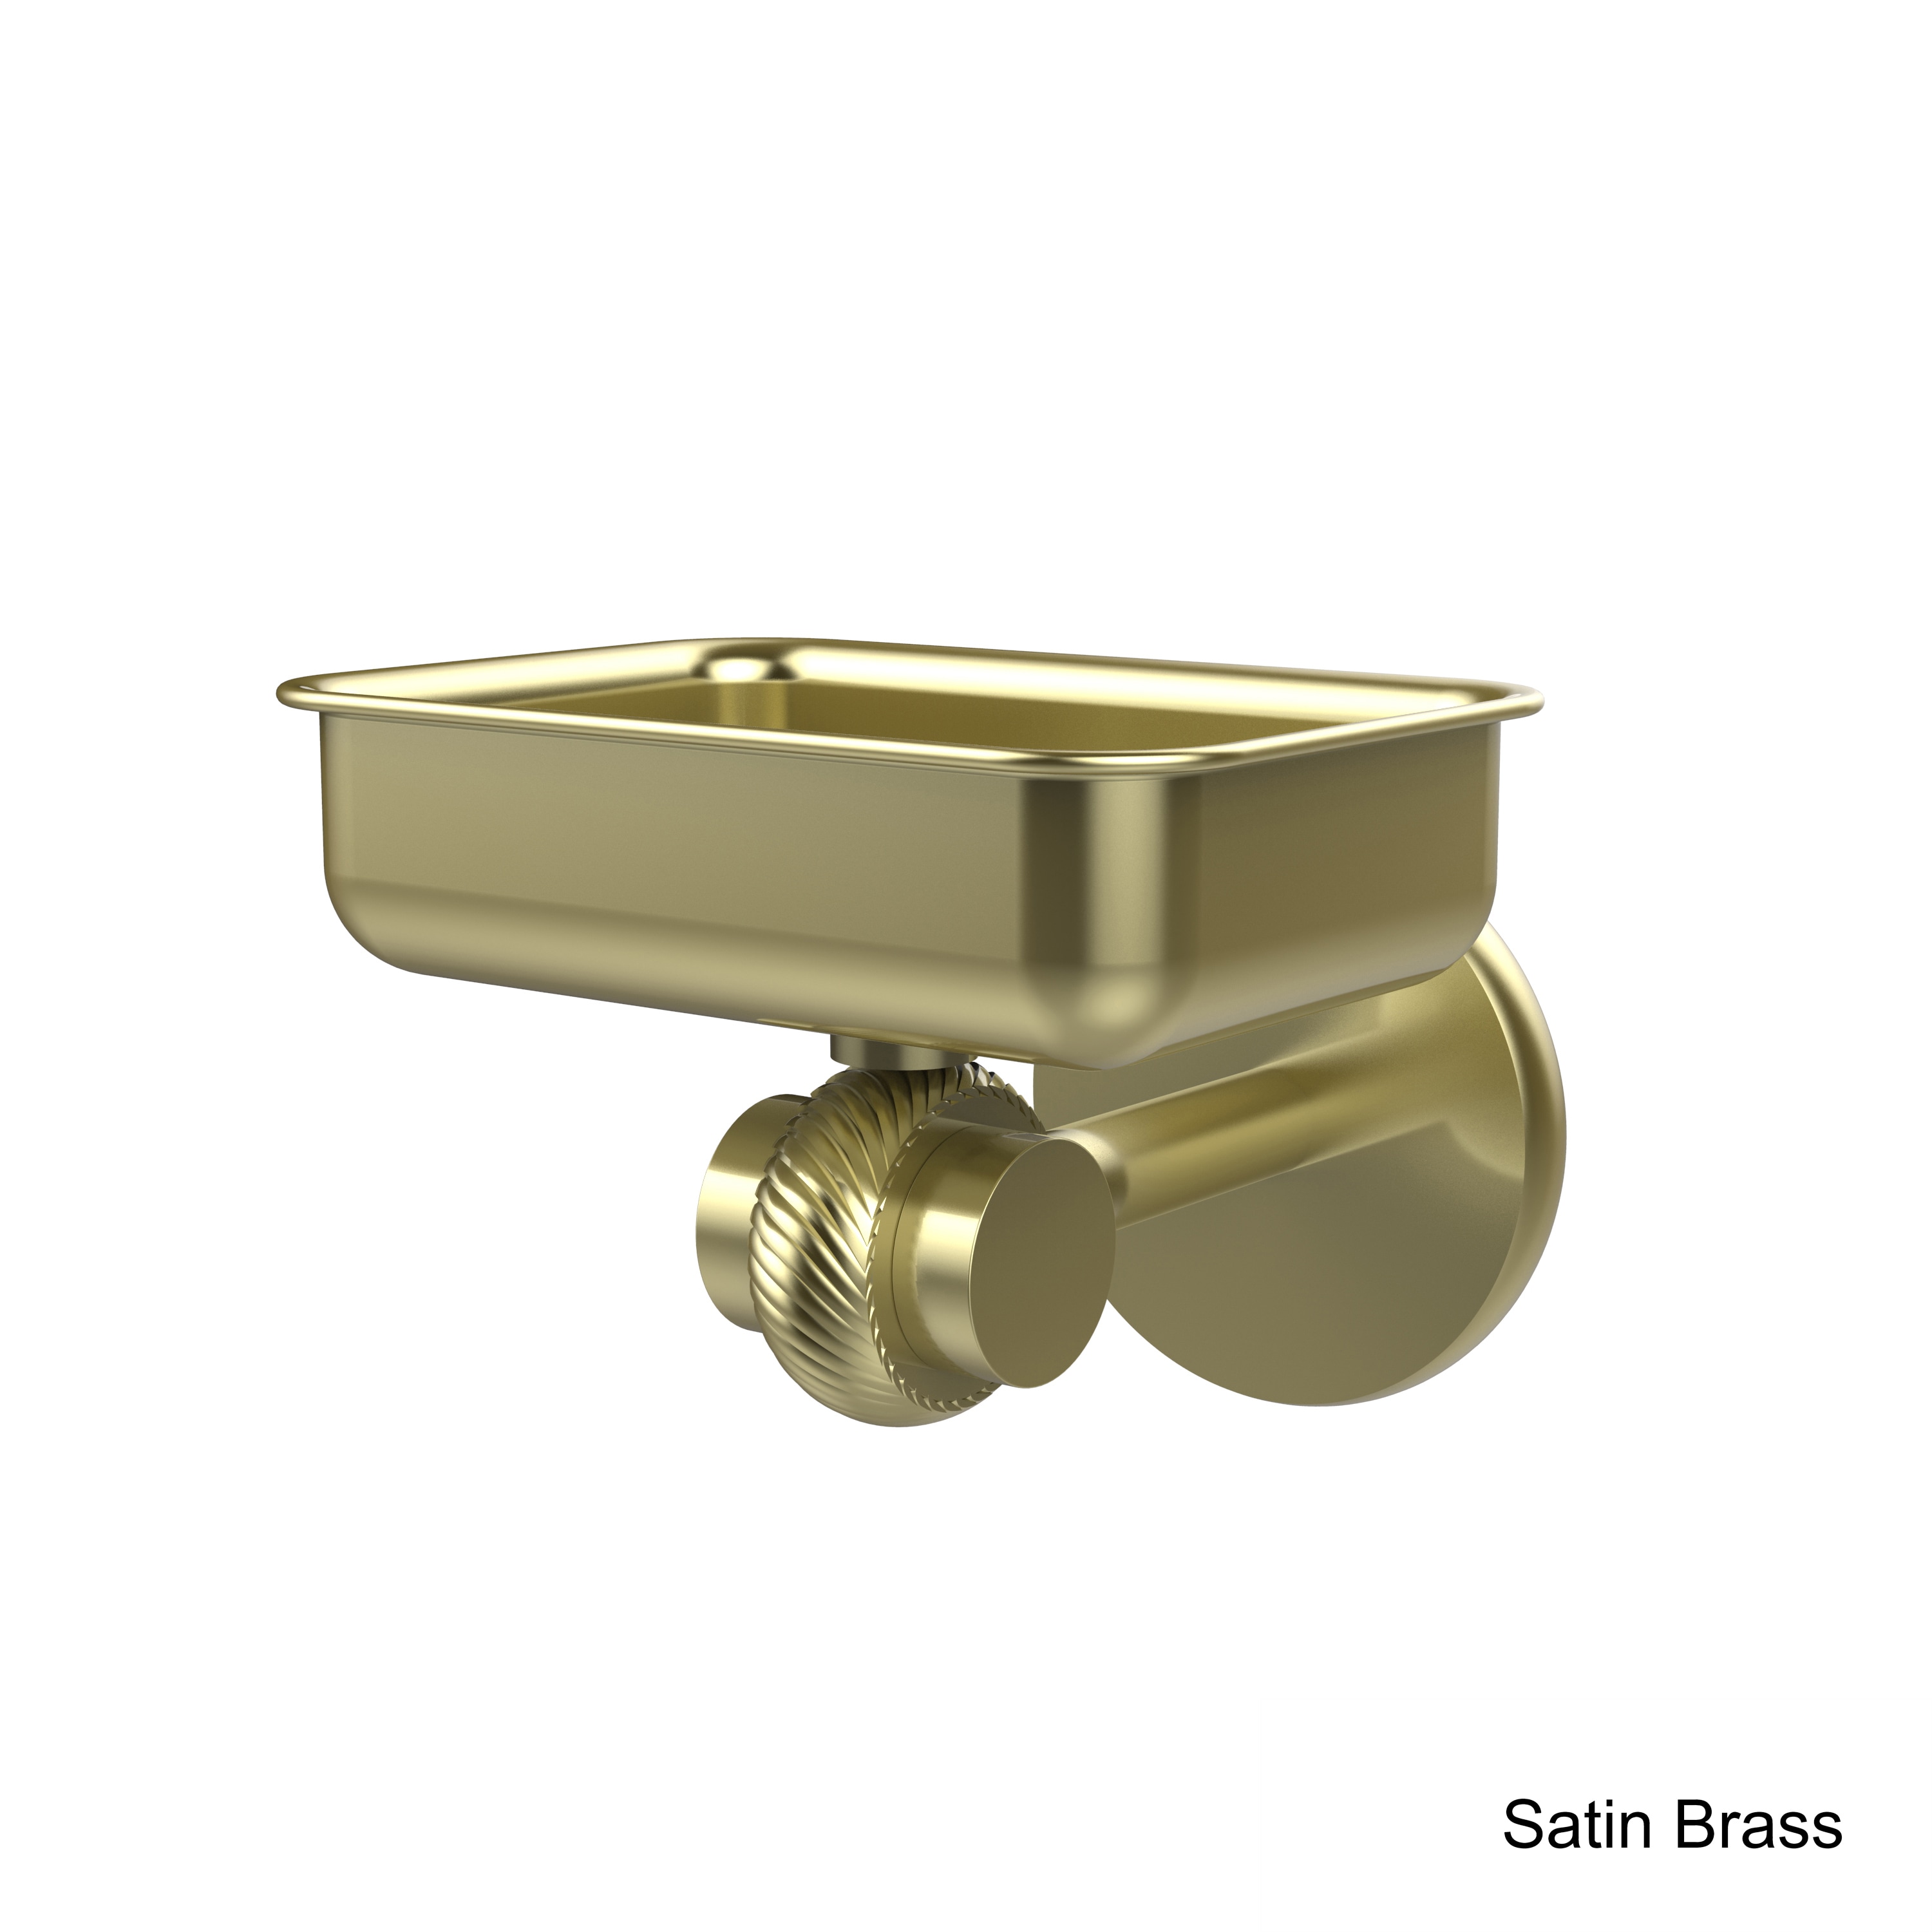 Allied Brass Satellite Orbit Soap • See best price »